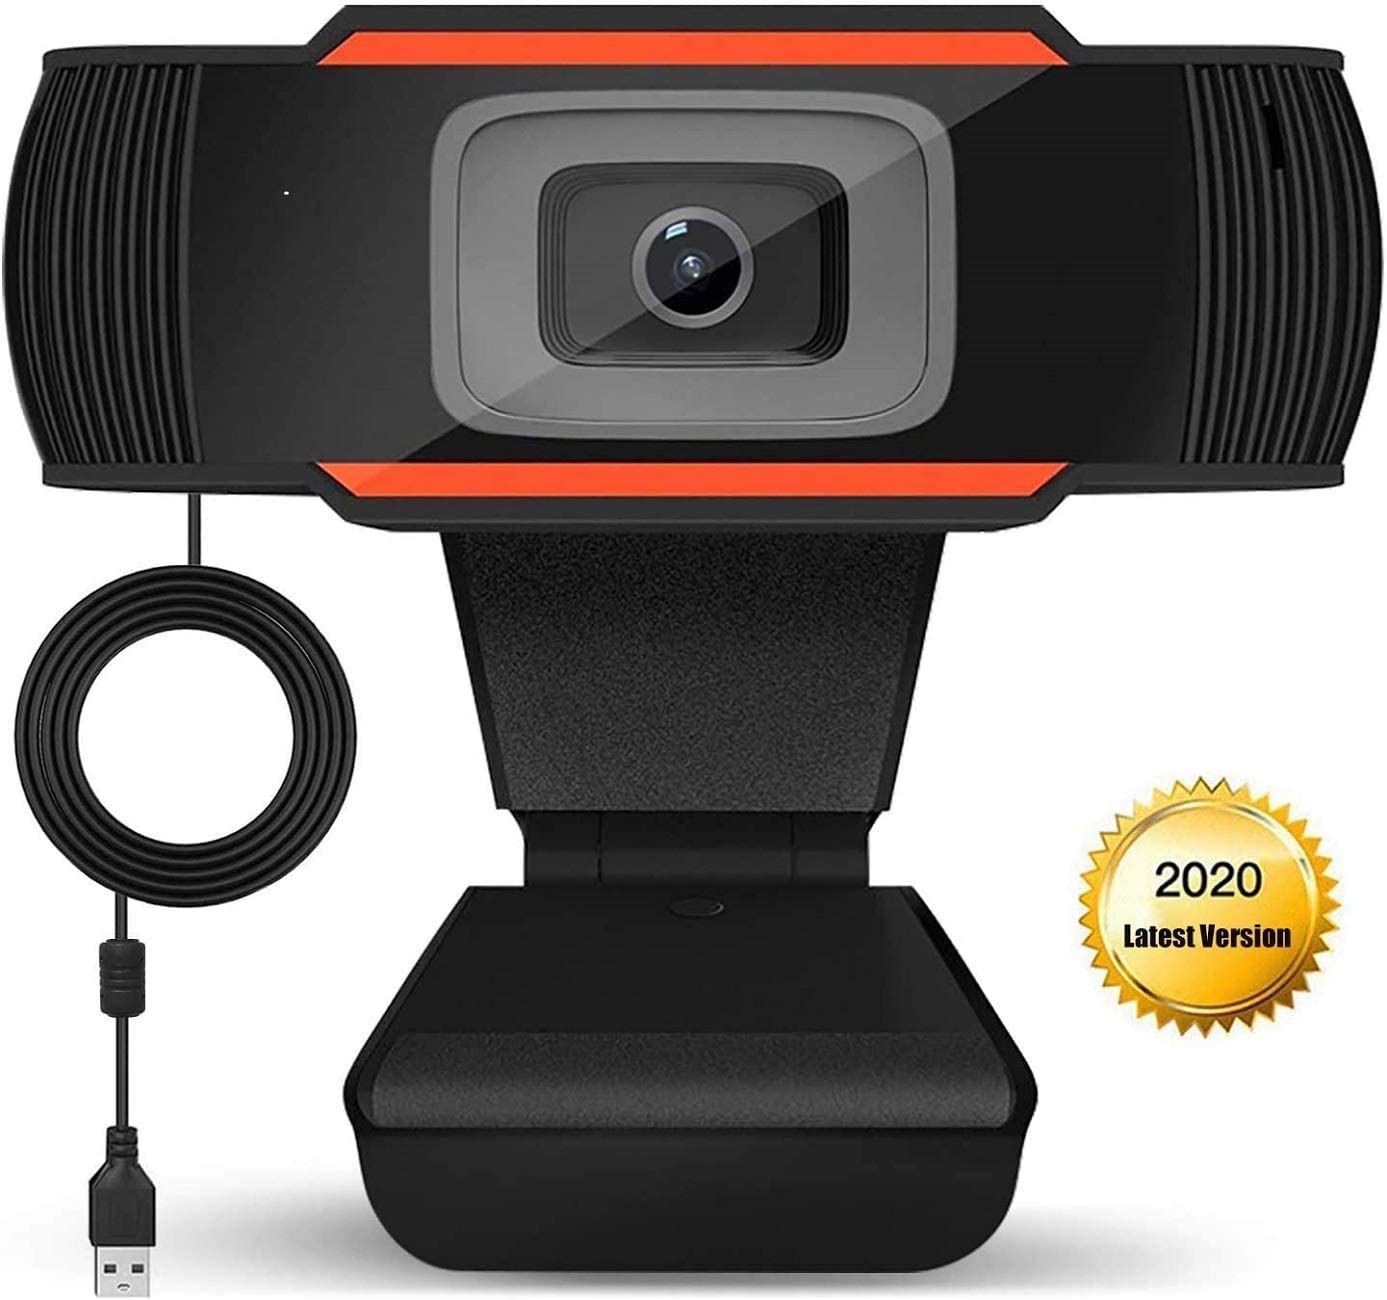 Microcad USB Webcam 720P fixed focus